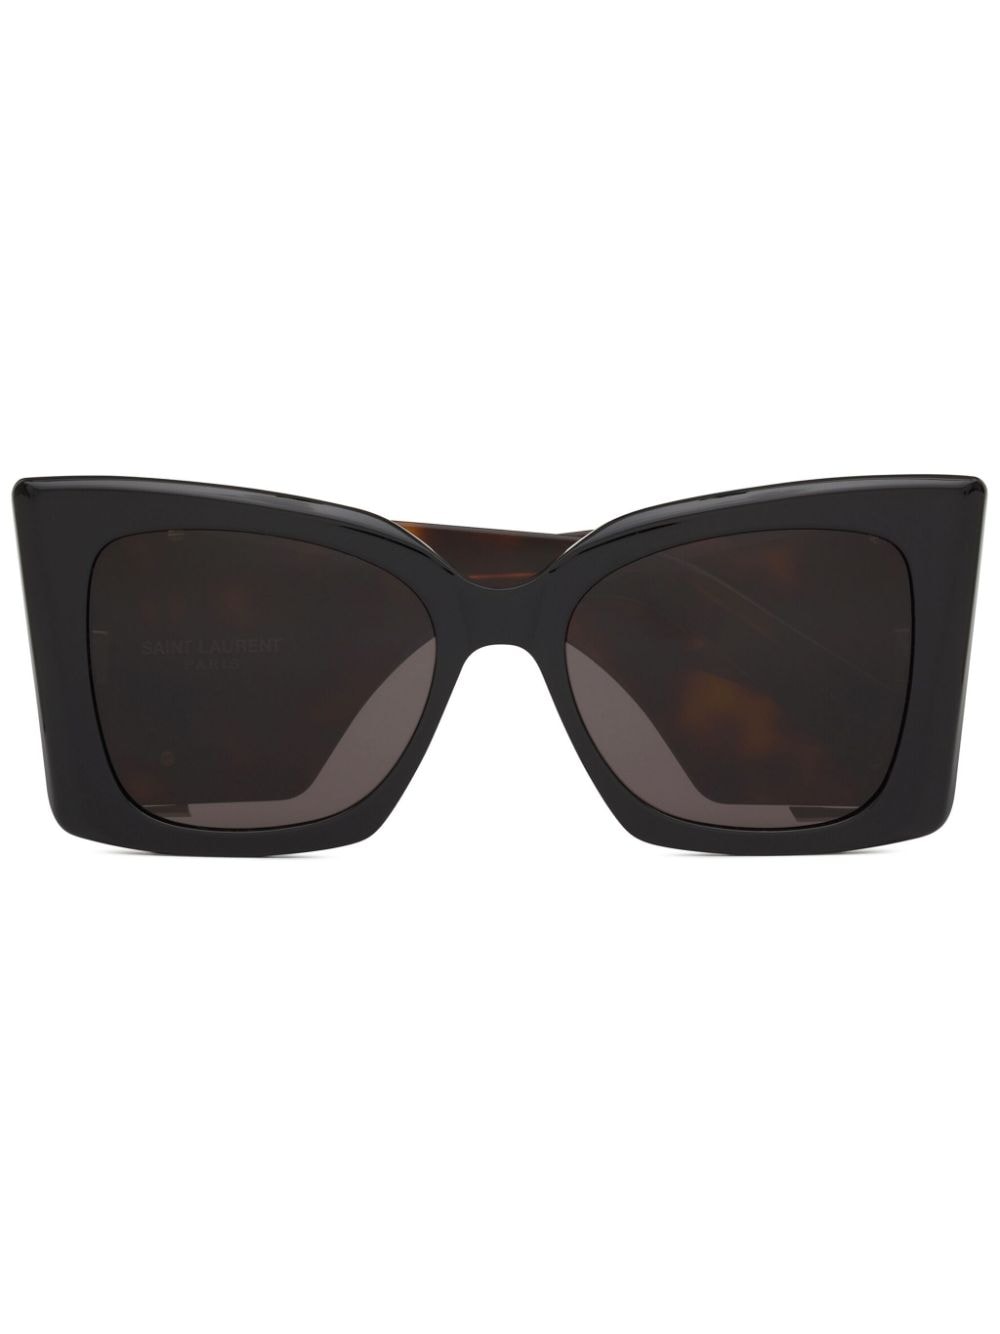 Saint Laurent Eyewear SL M119 zonnebril met oversized cat-eye montuur Bruin